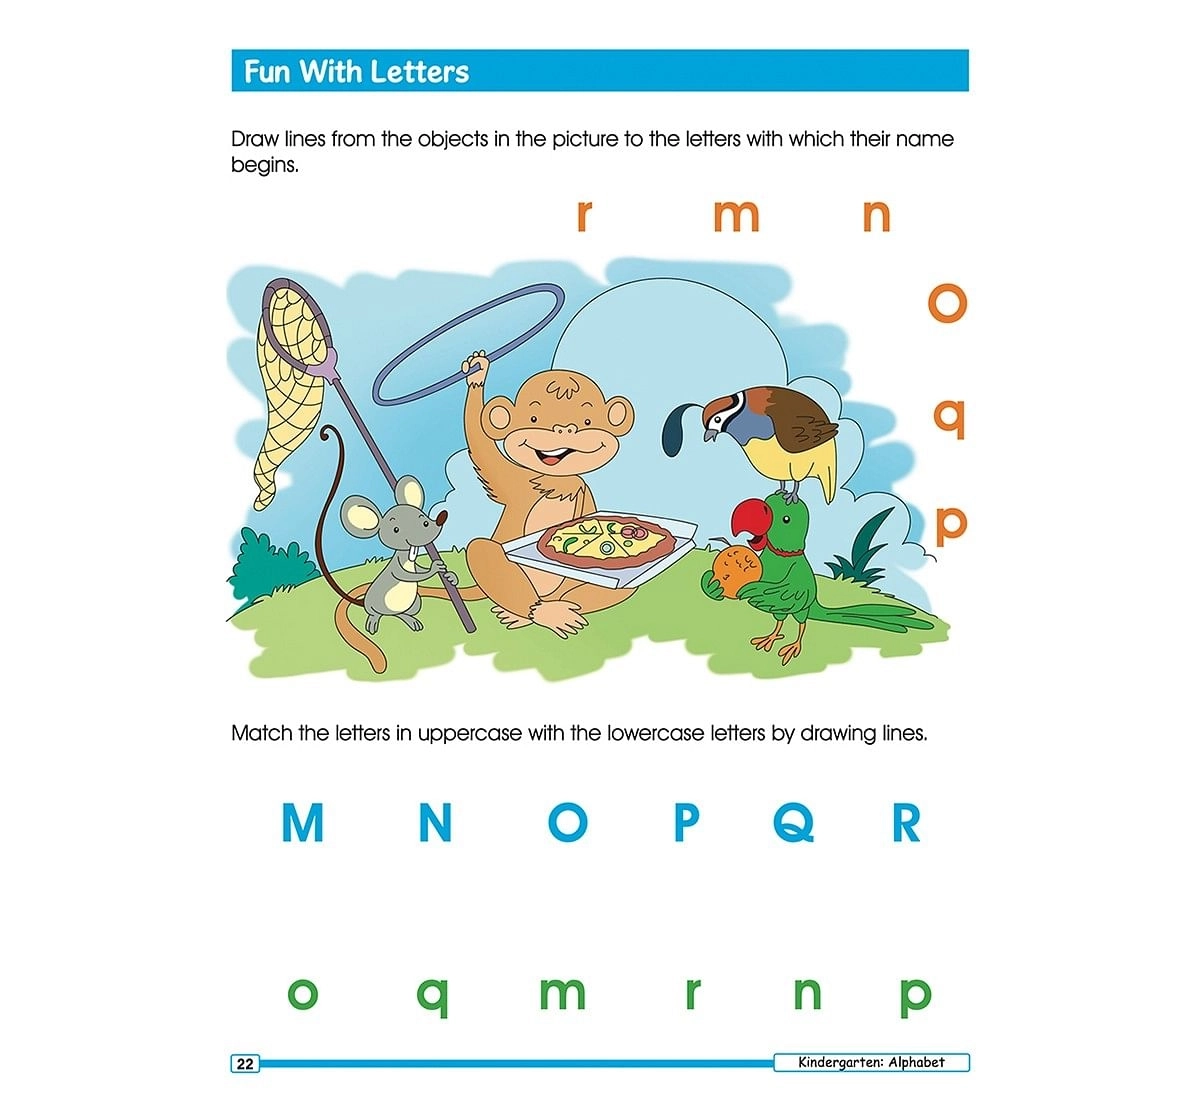 Jumbo Smart Scholars- Kindergarten Workbook Activity Book, 320 Pages, Paperback